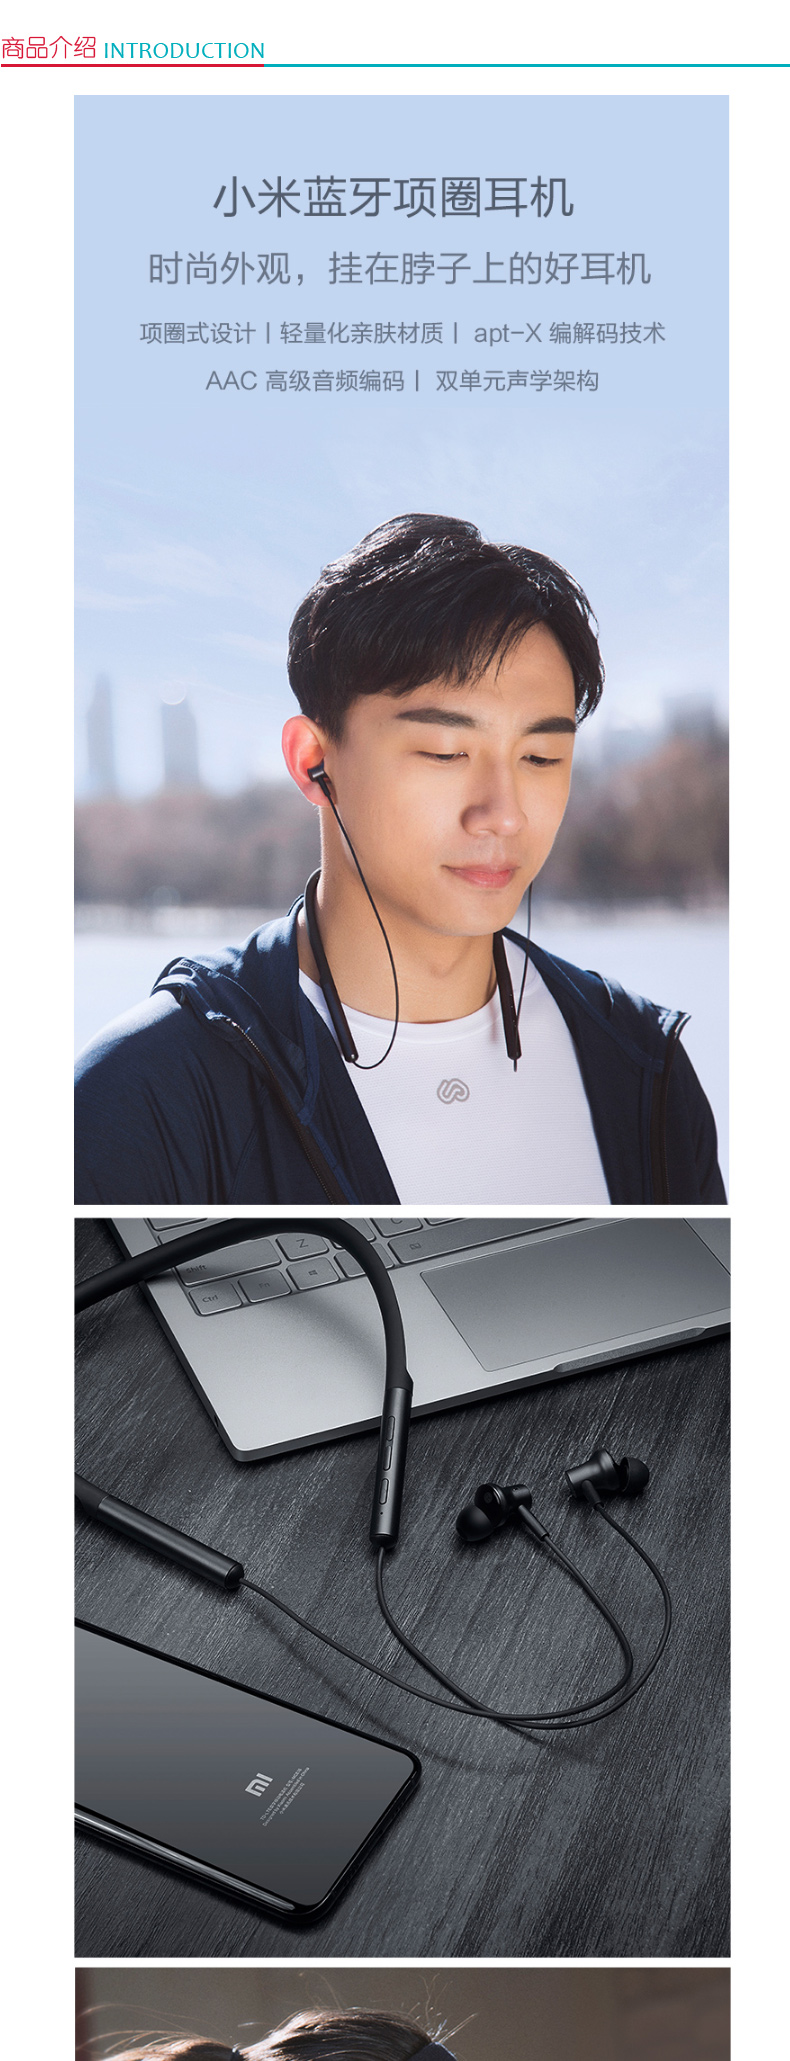 小米 MI 蓝牙项圈耳机 动圈+动铁 双单元发声 (黑色)